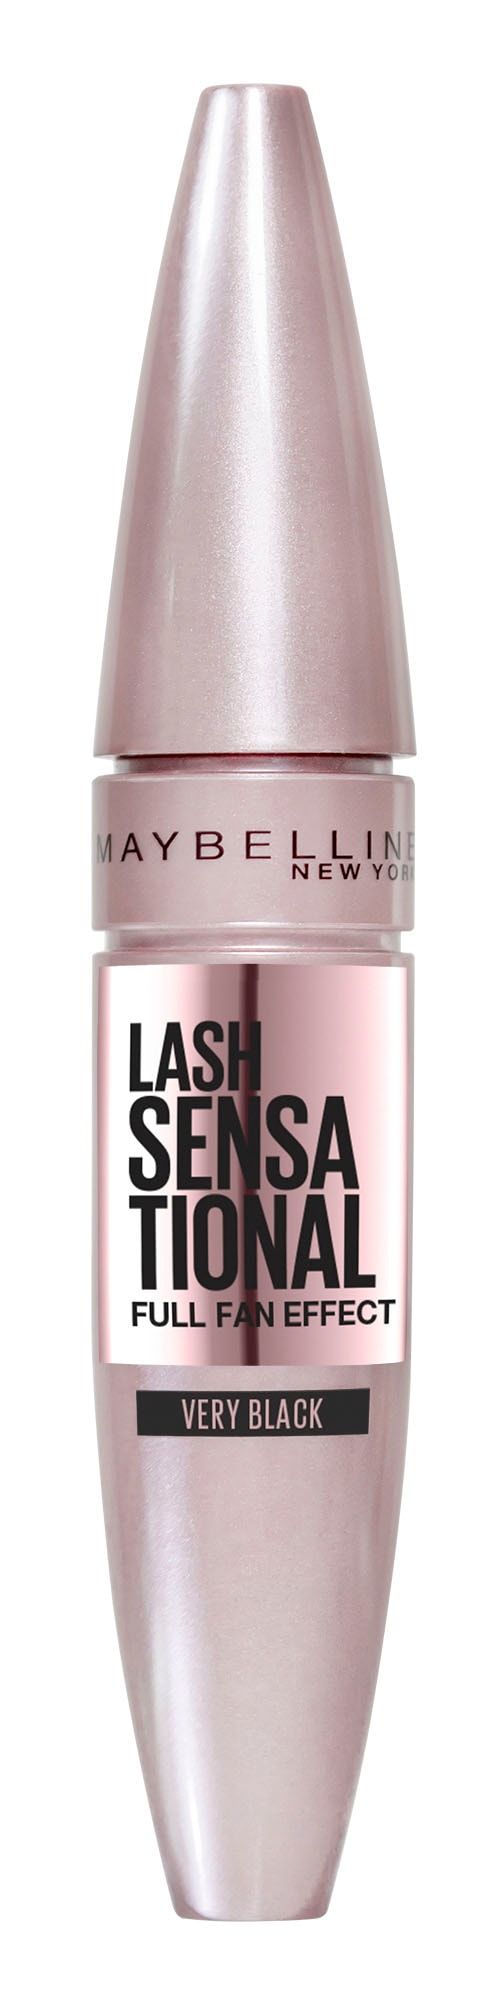 MAYBELLINE NEW YORK Mascara »Maybelline York online Mascara«, Sensational New Wimperntusche kaufen Lash